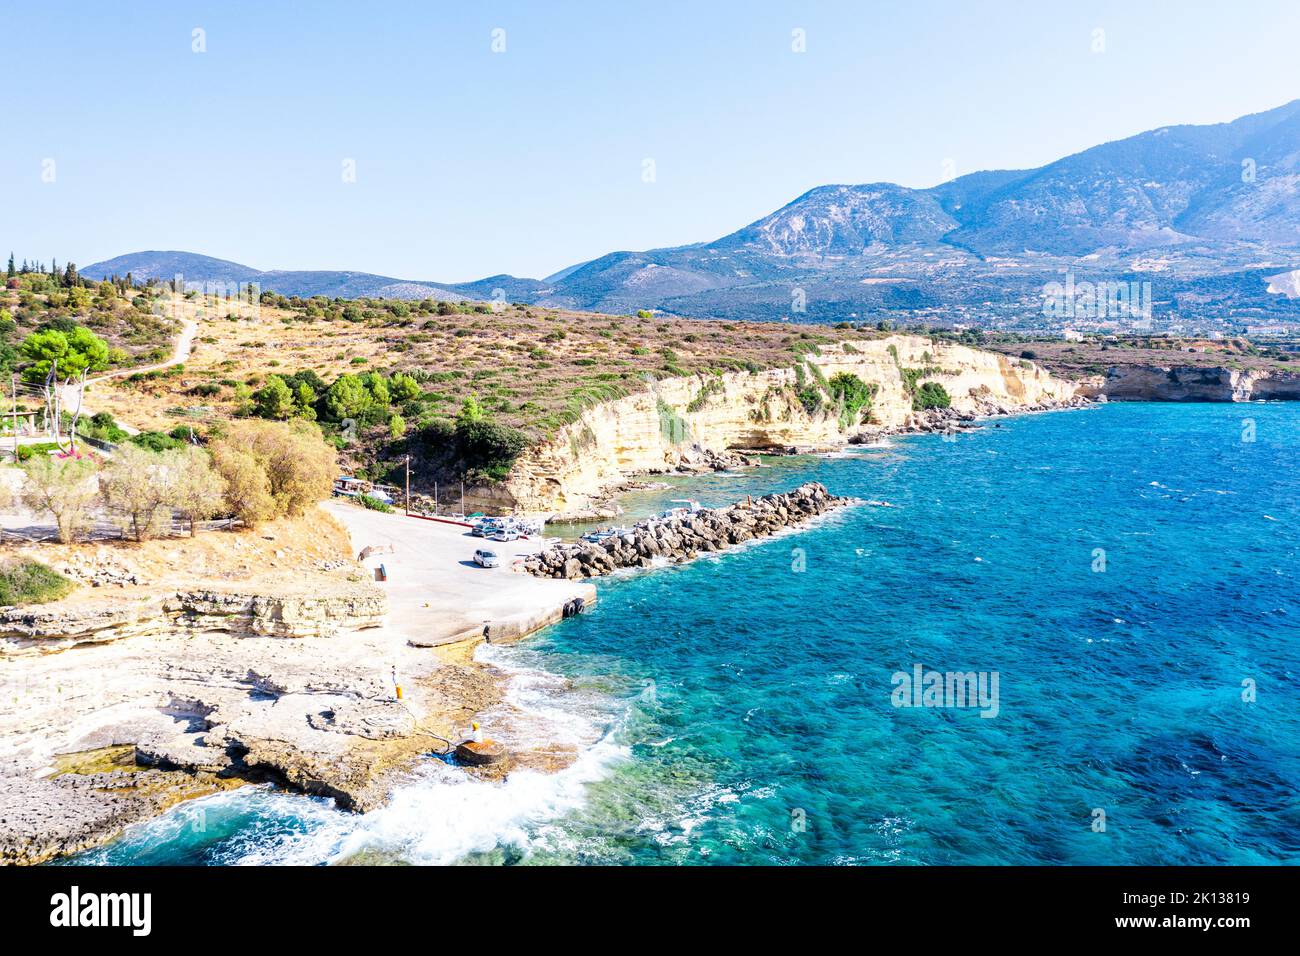 Wellen des türkisfarbenen Meeres, die am kleinen Hafen von Pessada auf Felsen krachen, Luftaufnahme, Kefalonia, Ionische Inseln, griechische Inseln, Griechenland, Europa Stockfoto